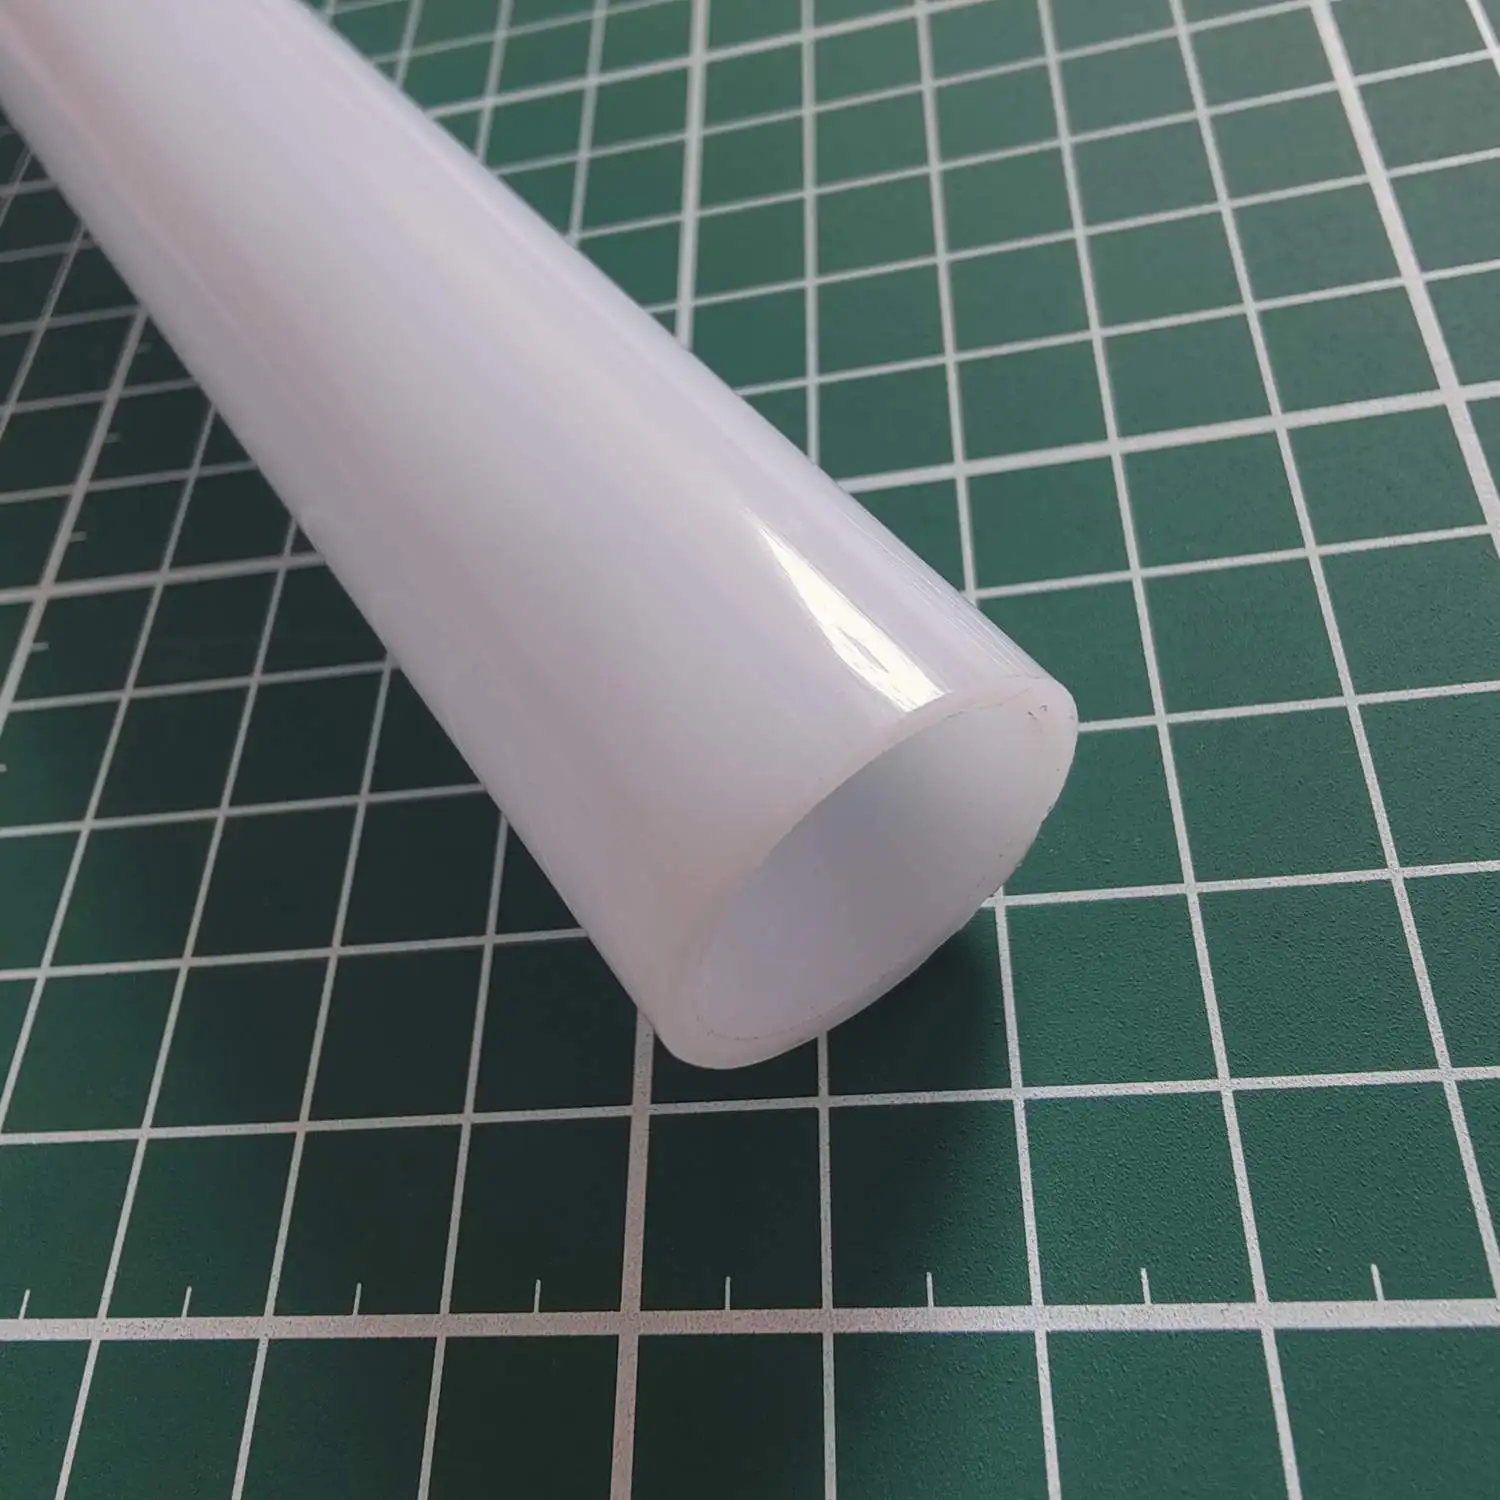 

DIY световой меч PC диффузор трубка ультра высокий астигматизм материал для 1 дюйм сабля